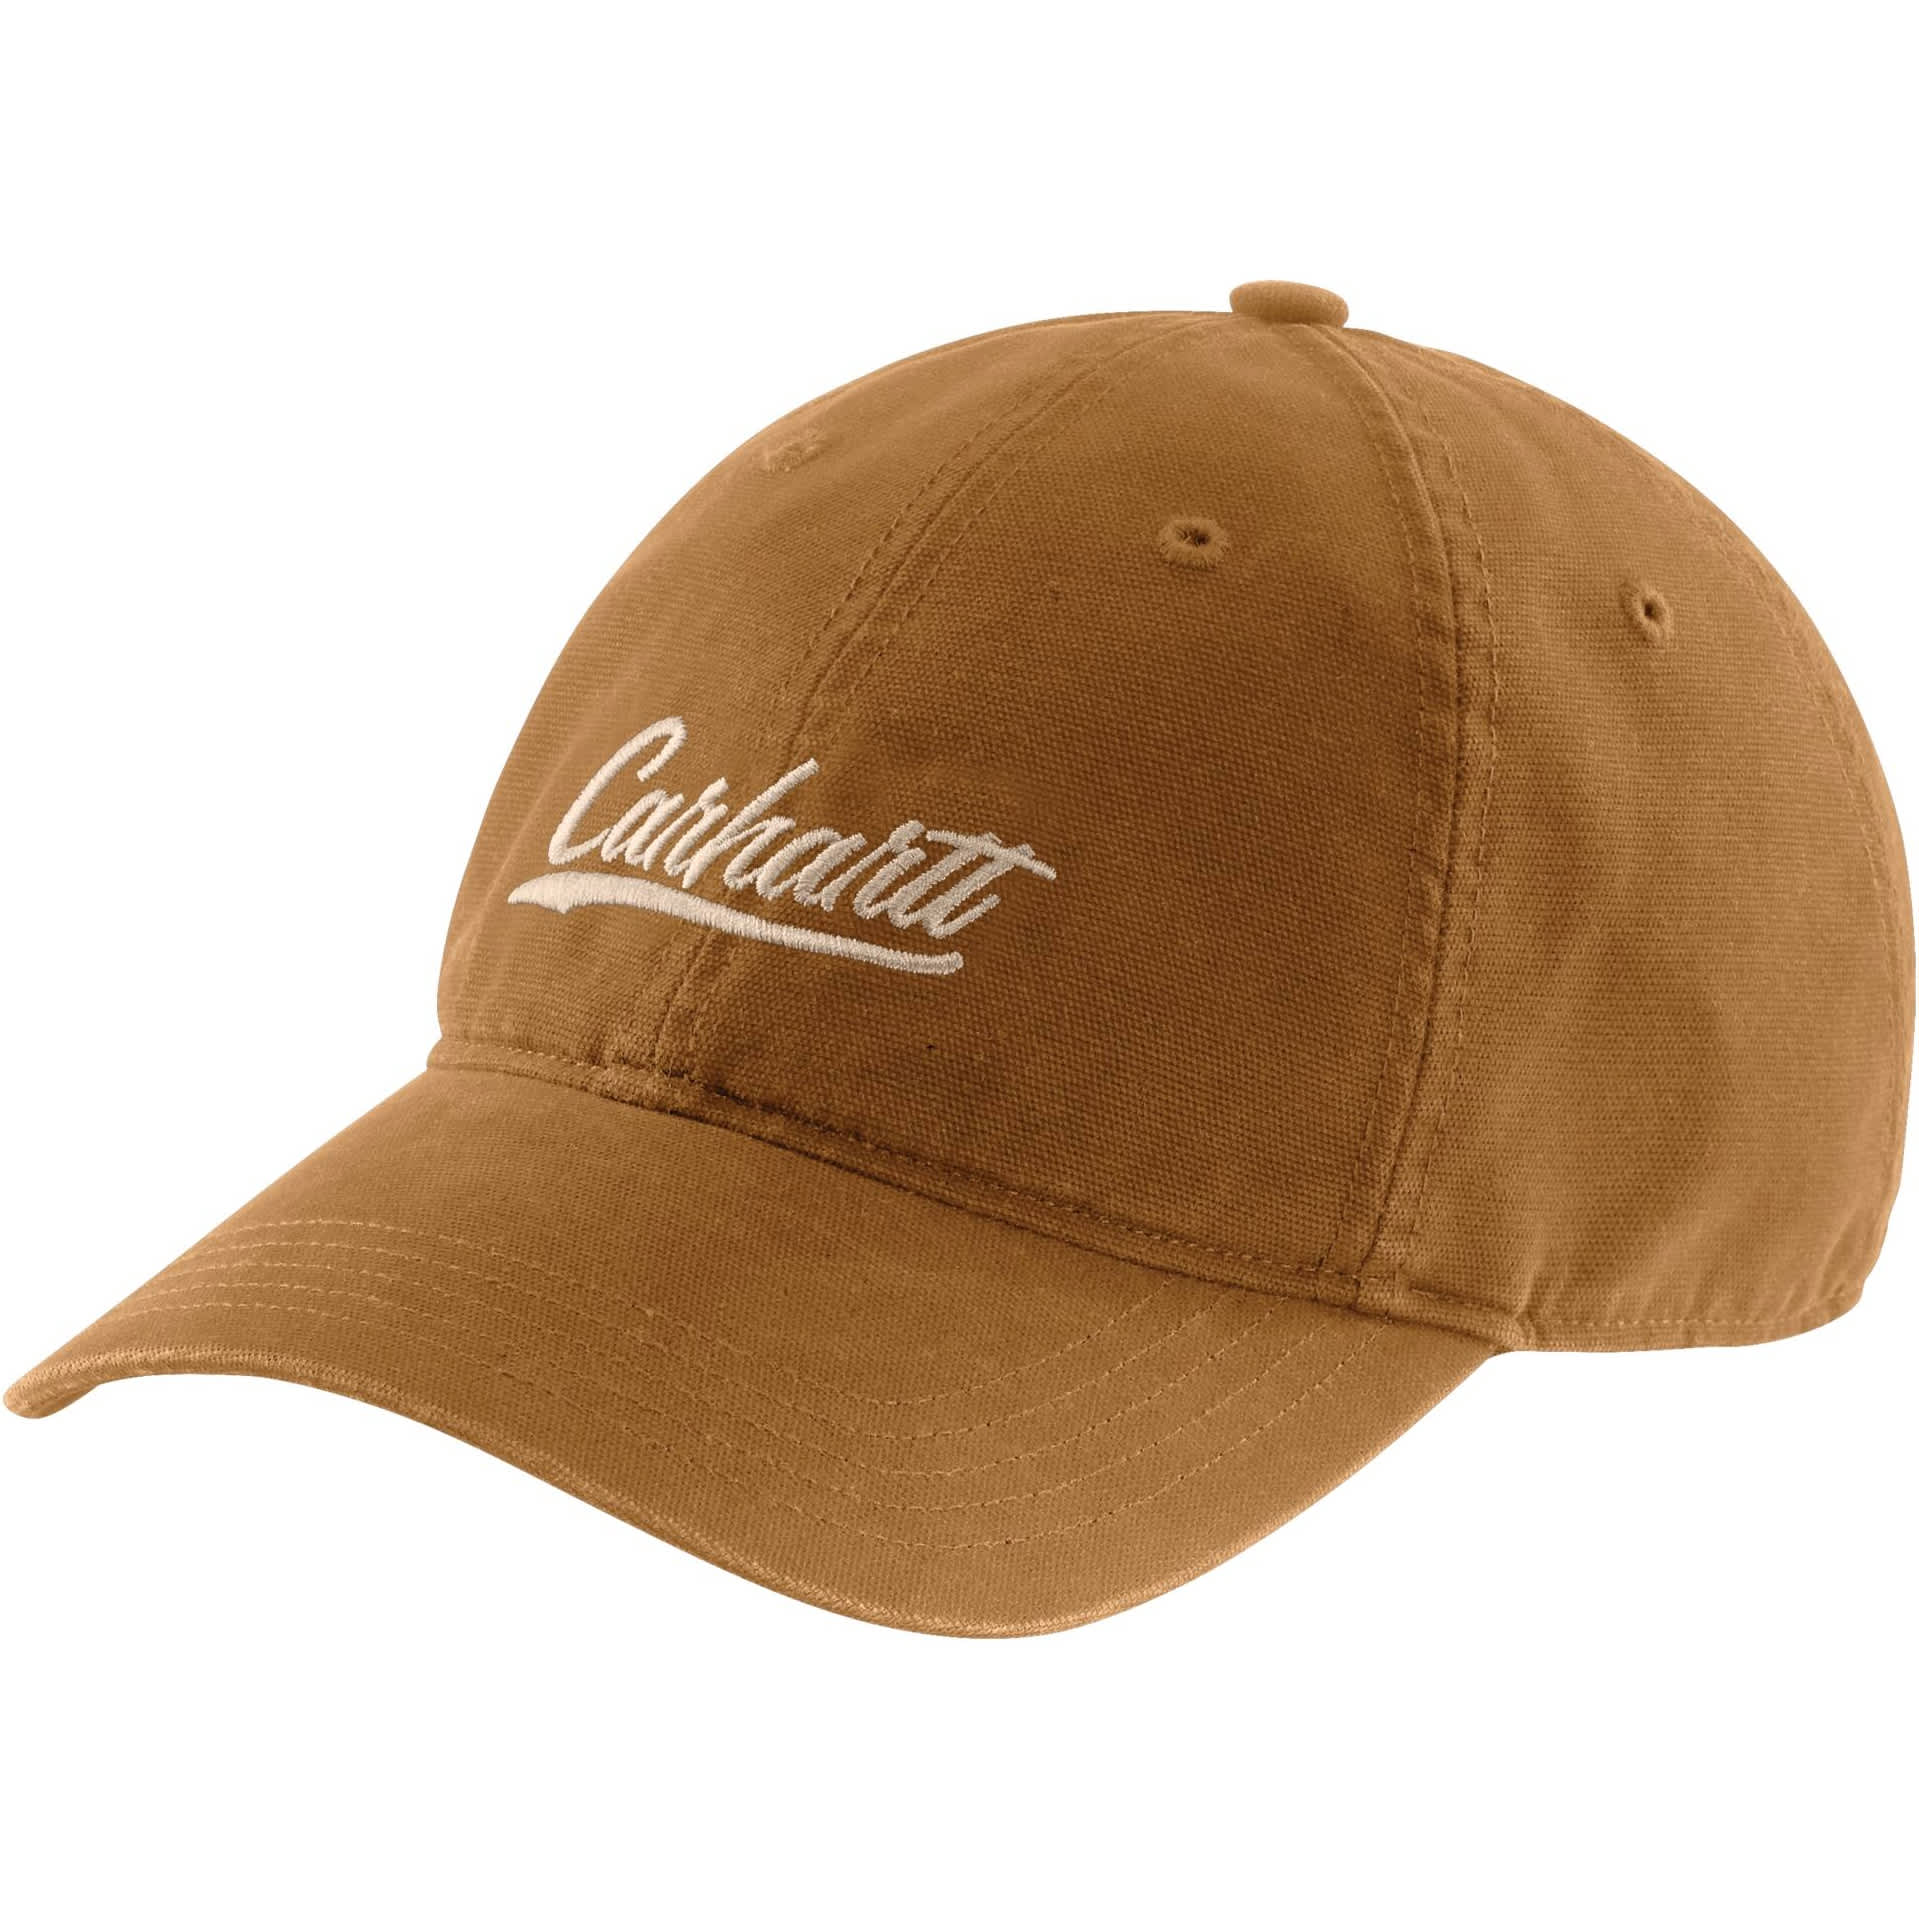 Caps & Hats  Cabela's Canada